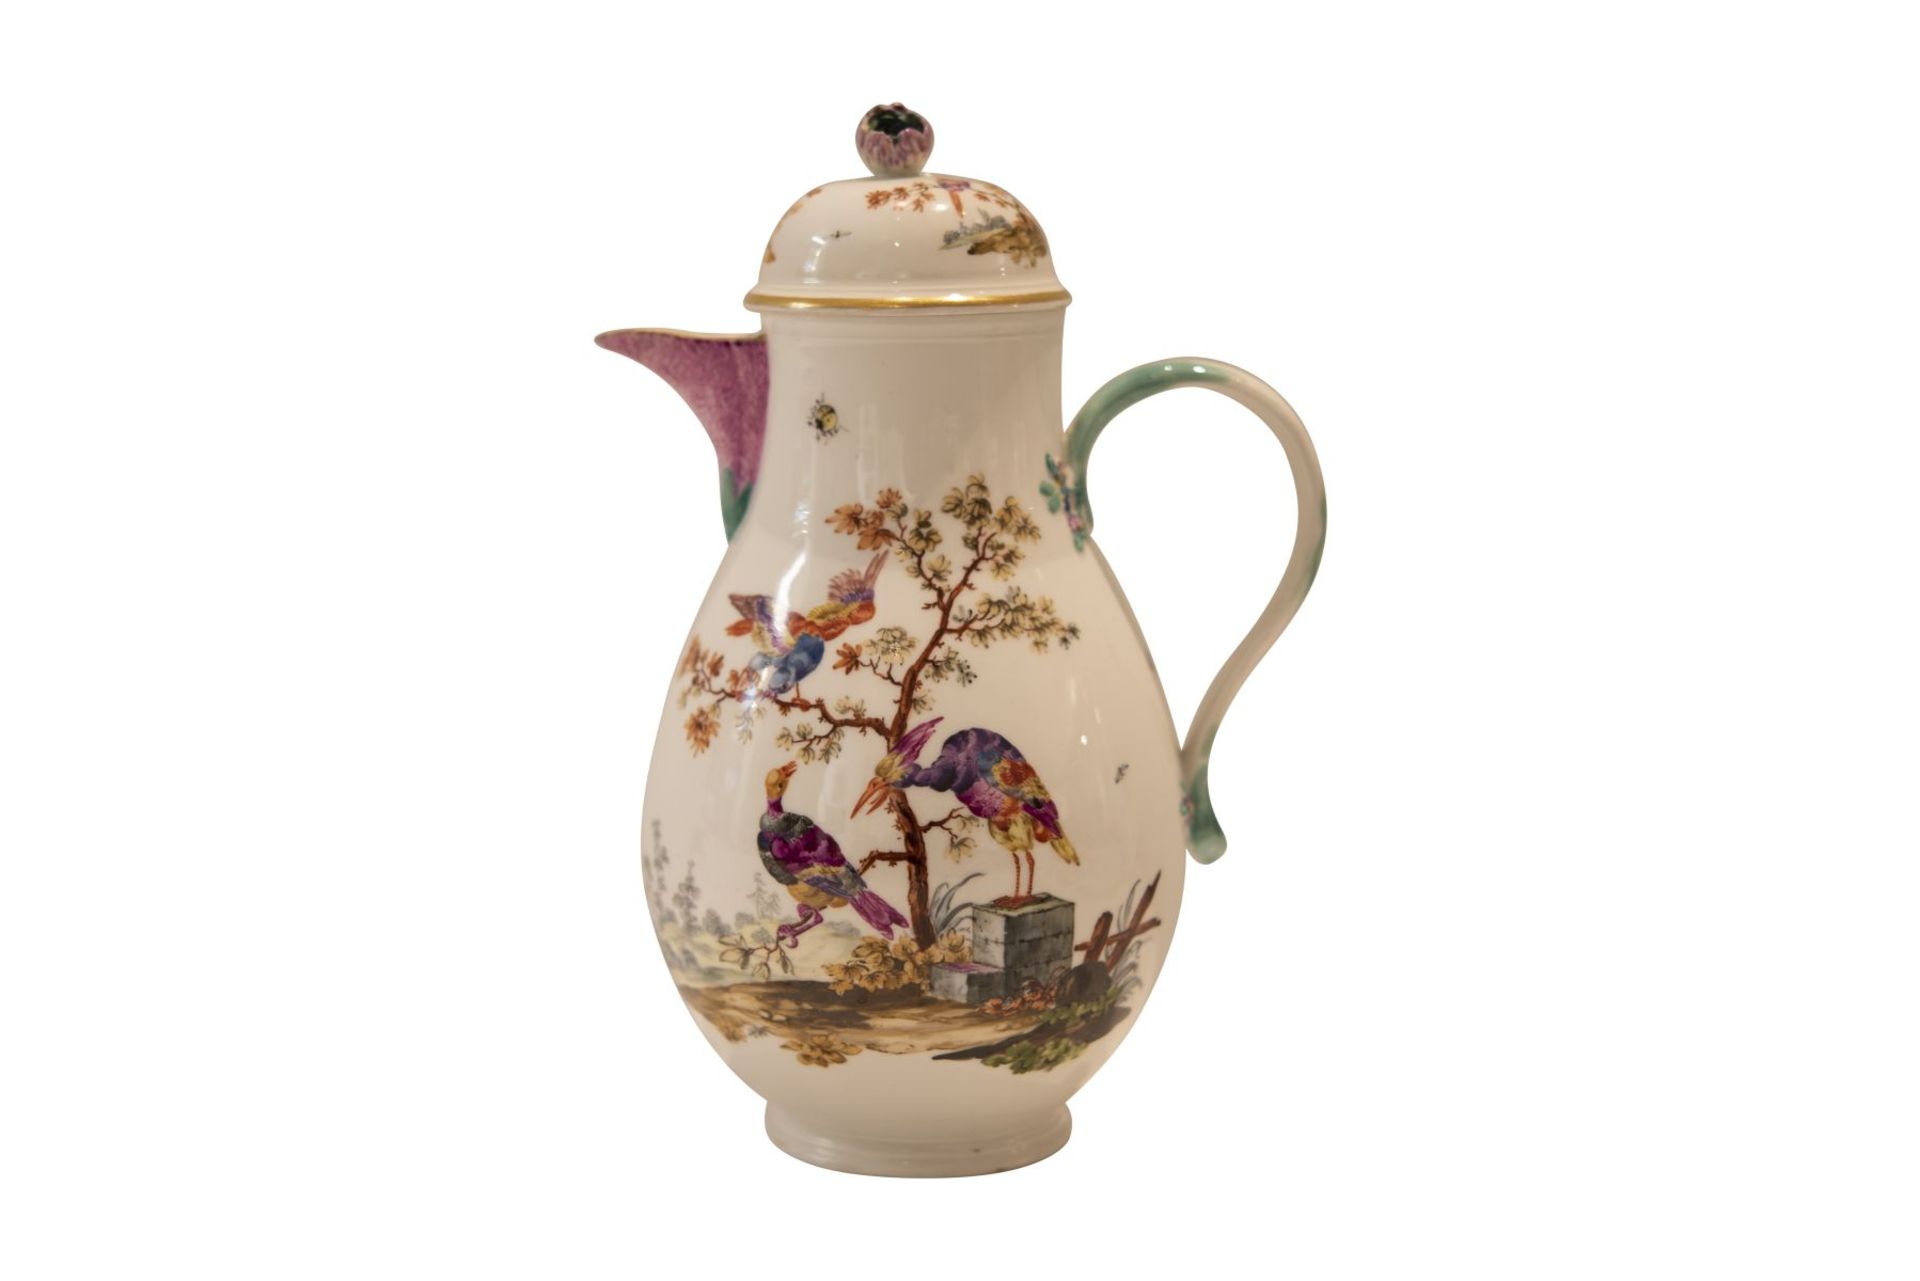 9 piece porcelain service Meissen around 1763 - Image 3 of 12